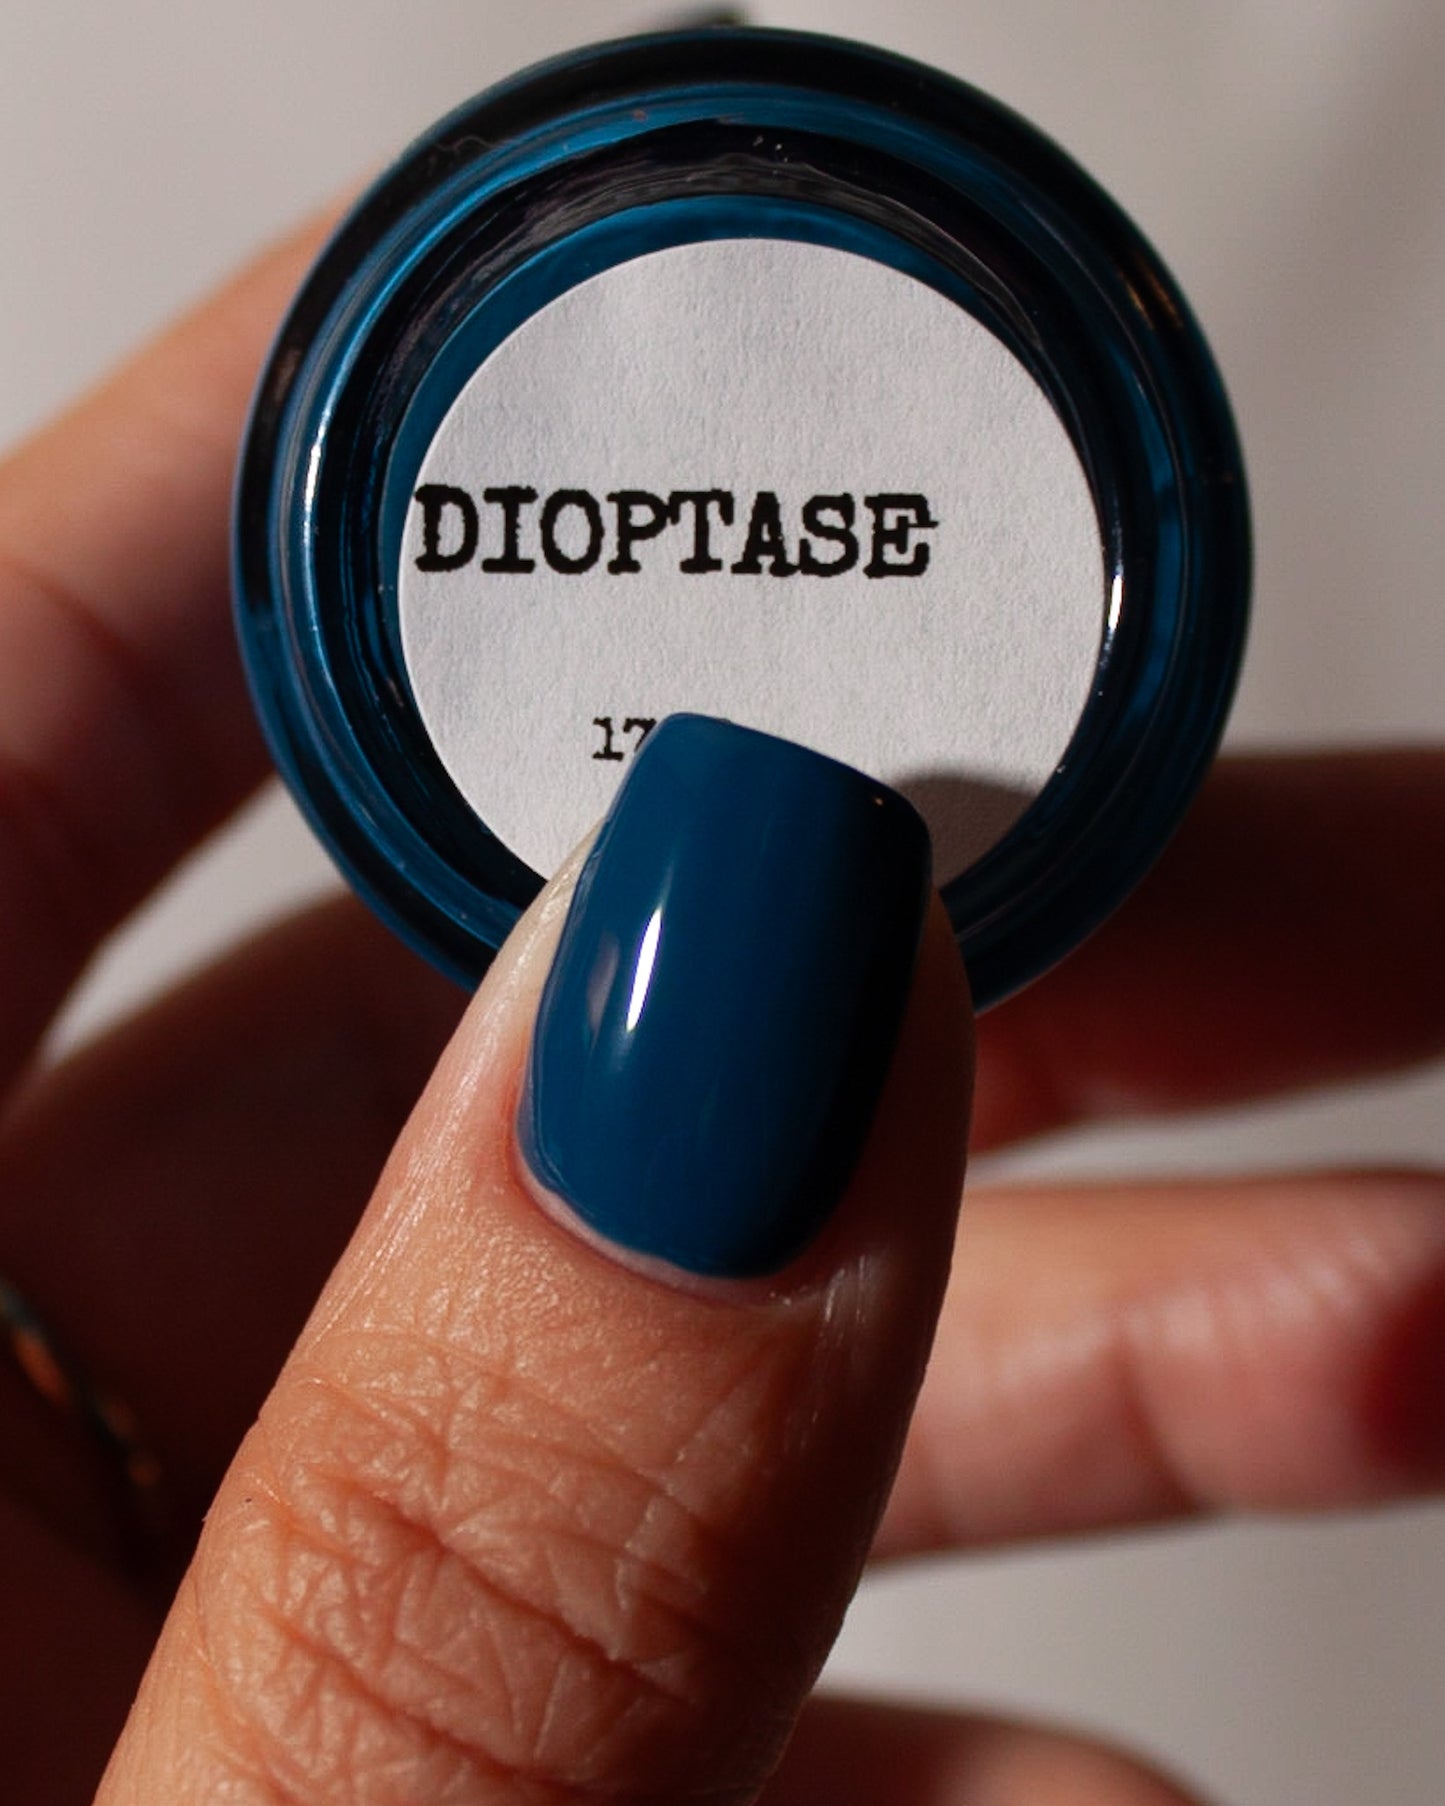 Dioptase